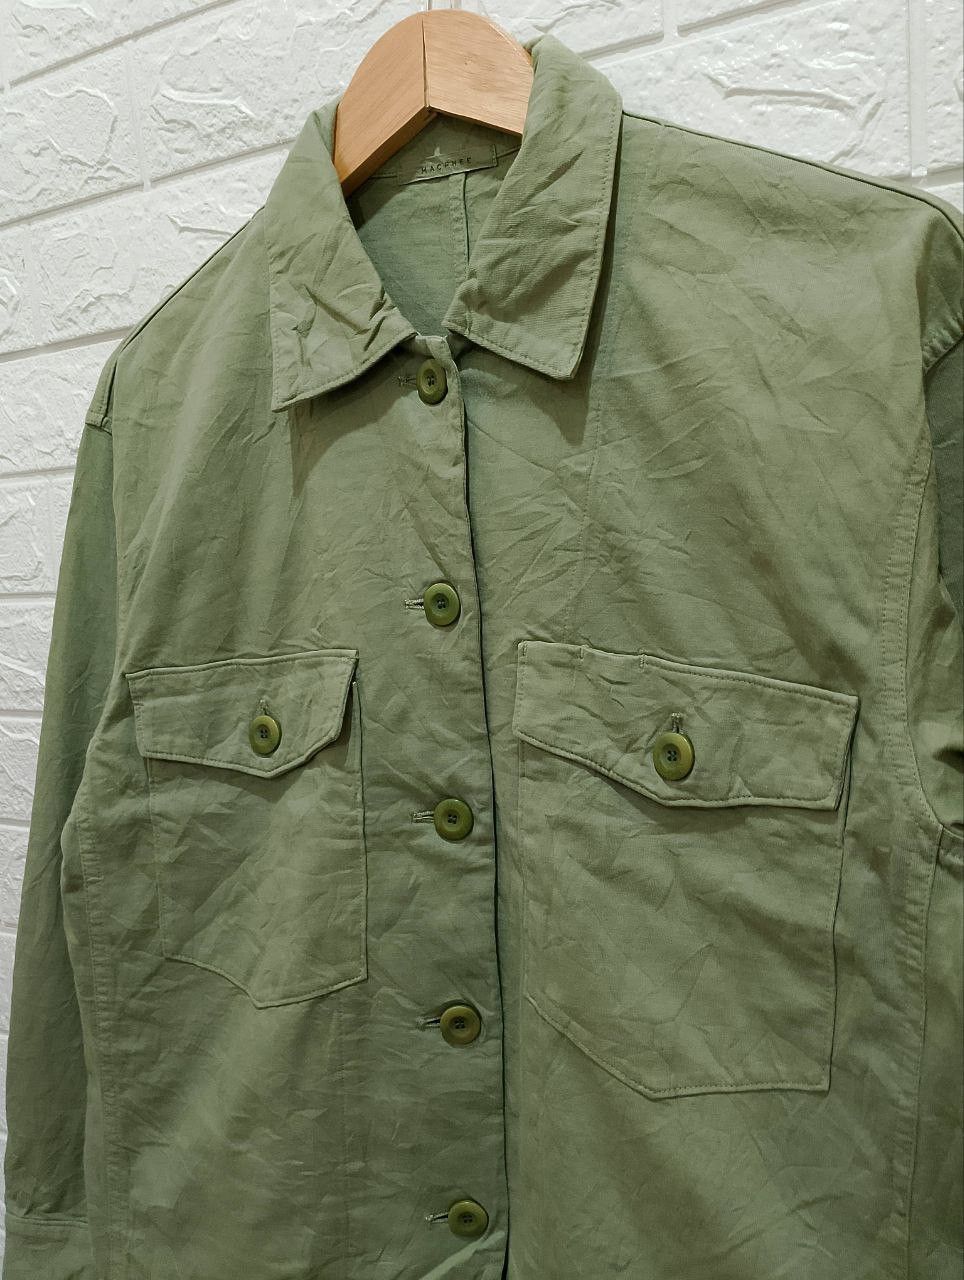 Archival Clothing - Macphee Military OG-107 Design Long Sleeve Shirt Jacket - 5